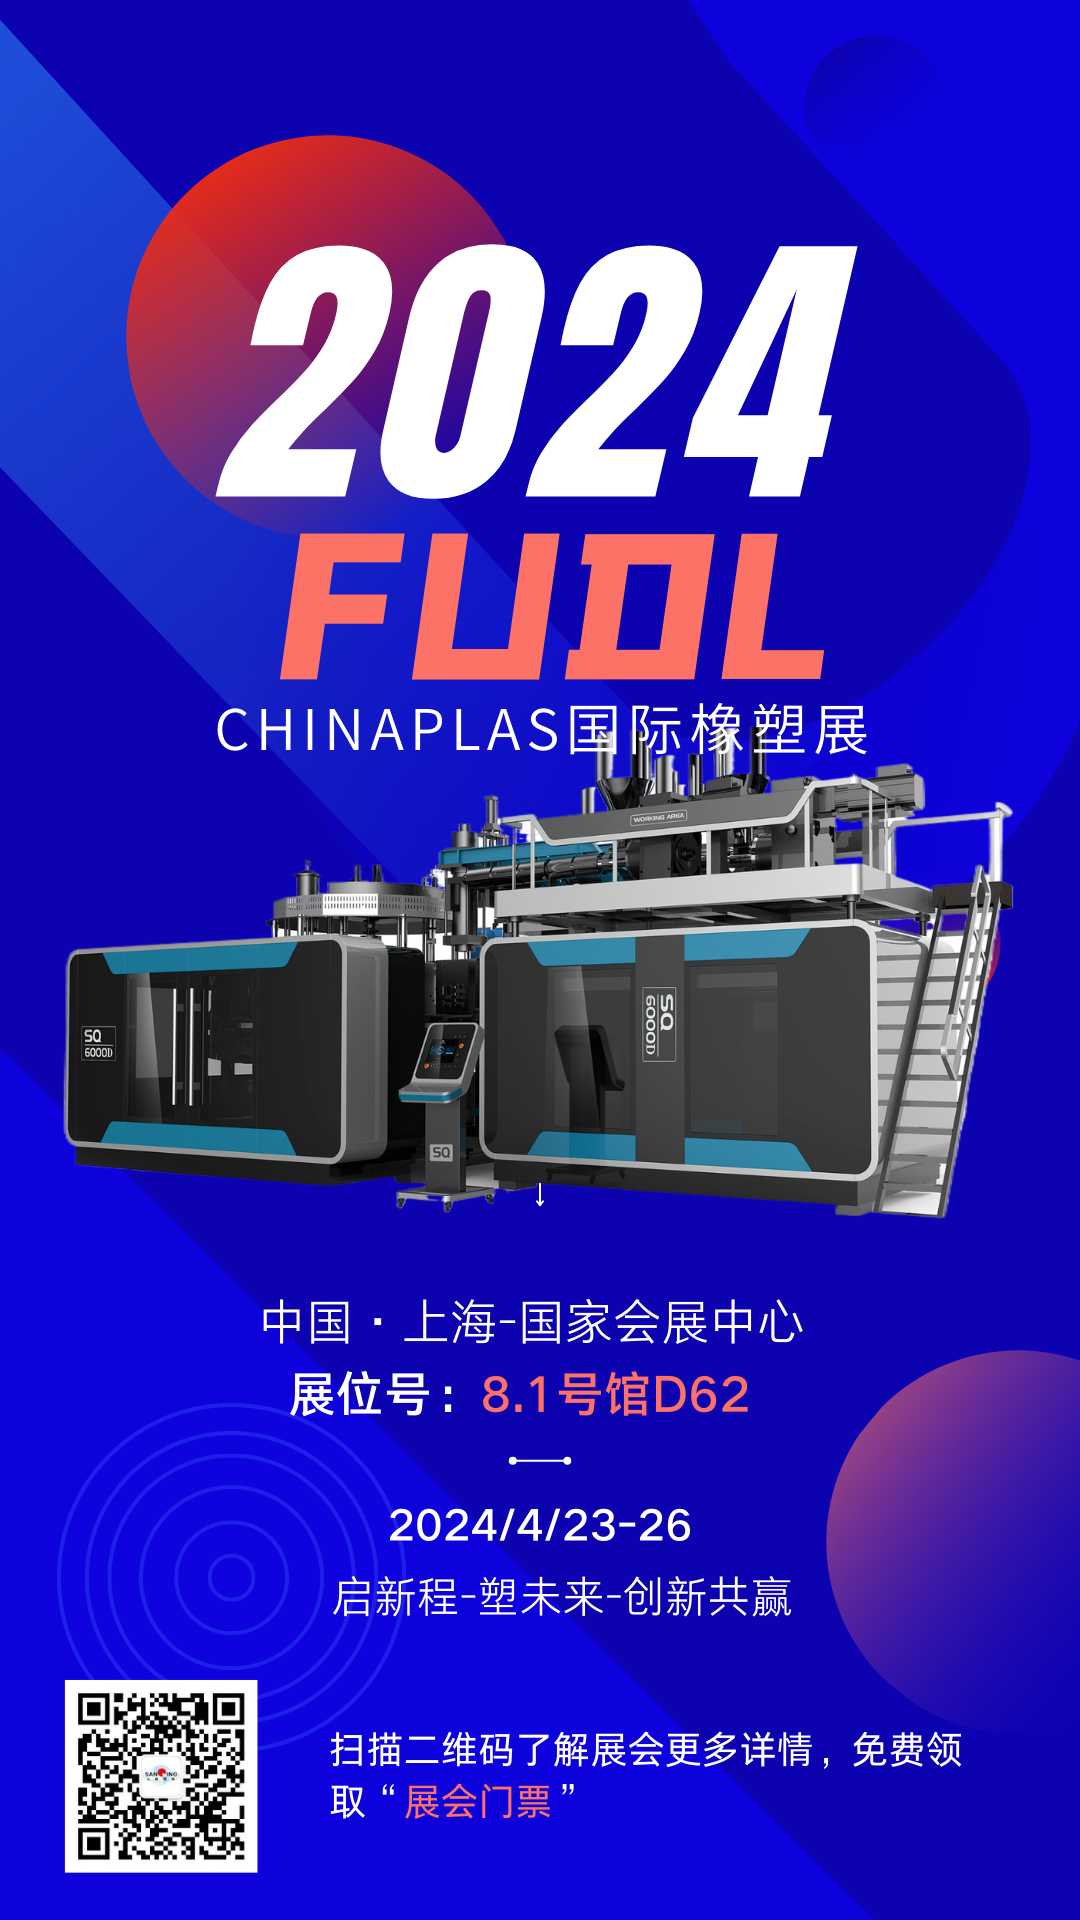 【展会预告】FUDL福德隆即将亮相2024国际橡塑展，4月|上海|期待与您相约！